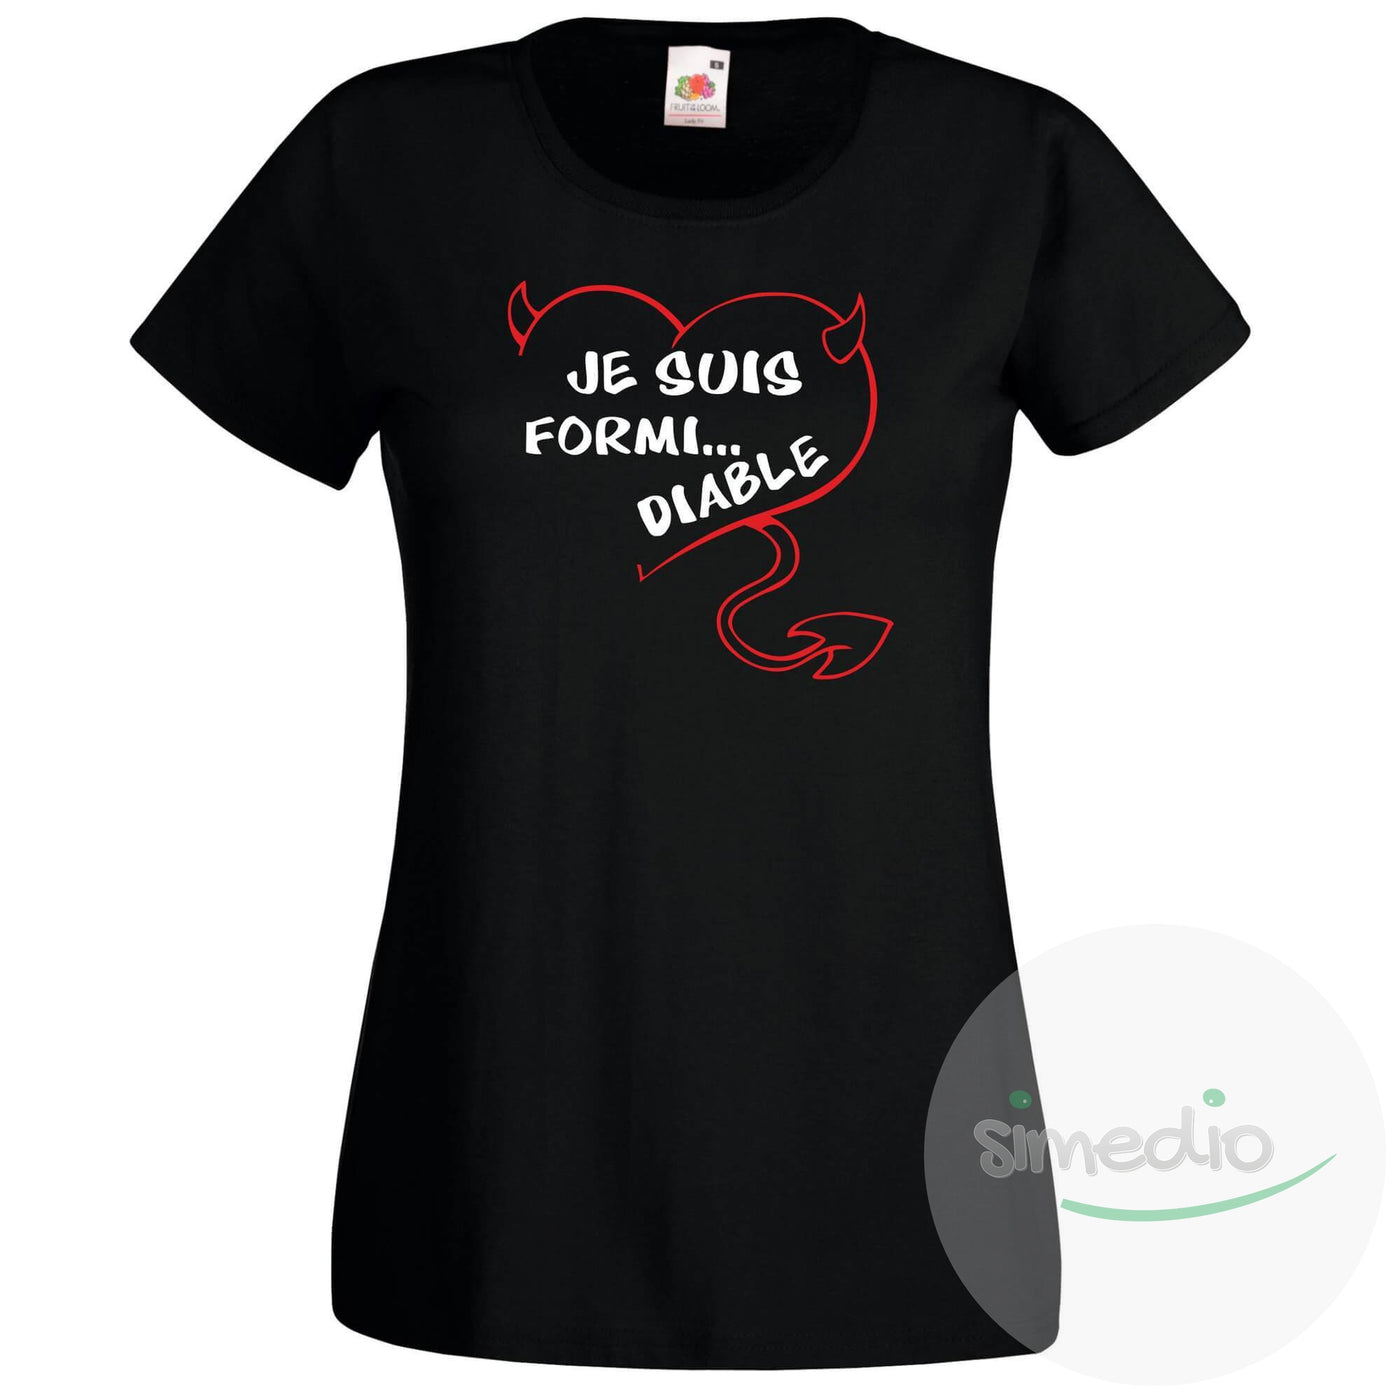 T-shirt original : je suis FORMI... DIABLE, Noir, S, Femme - SiMEDIO